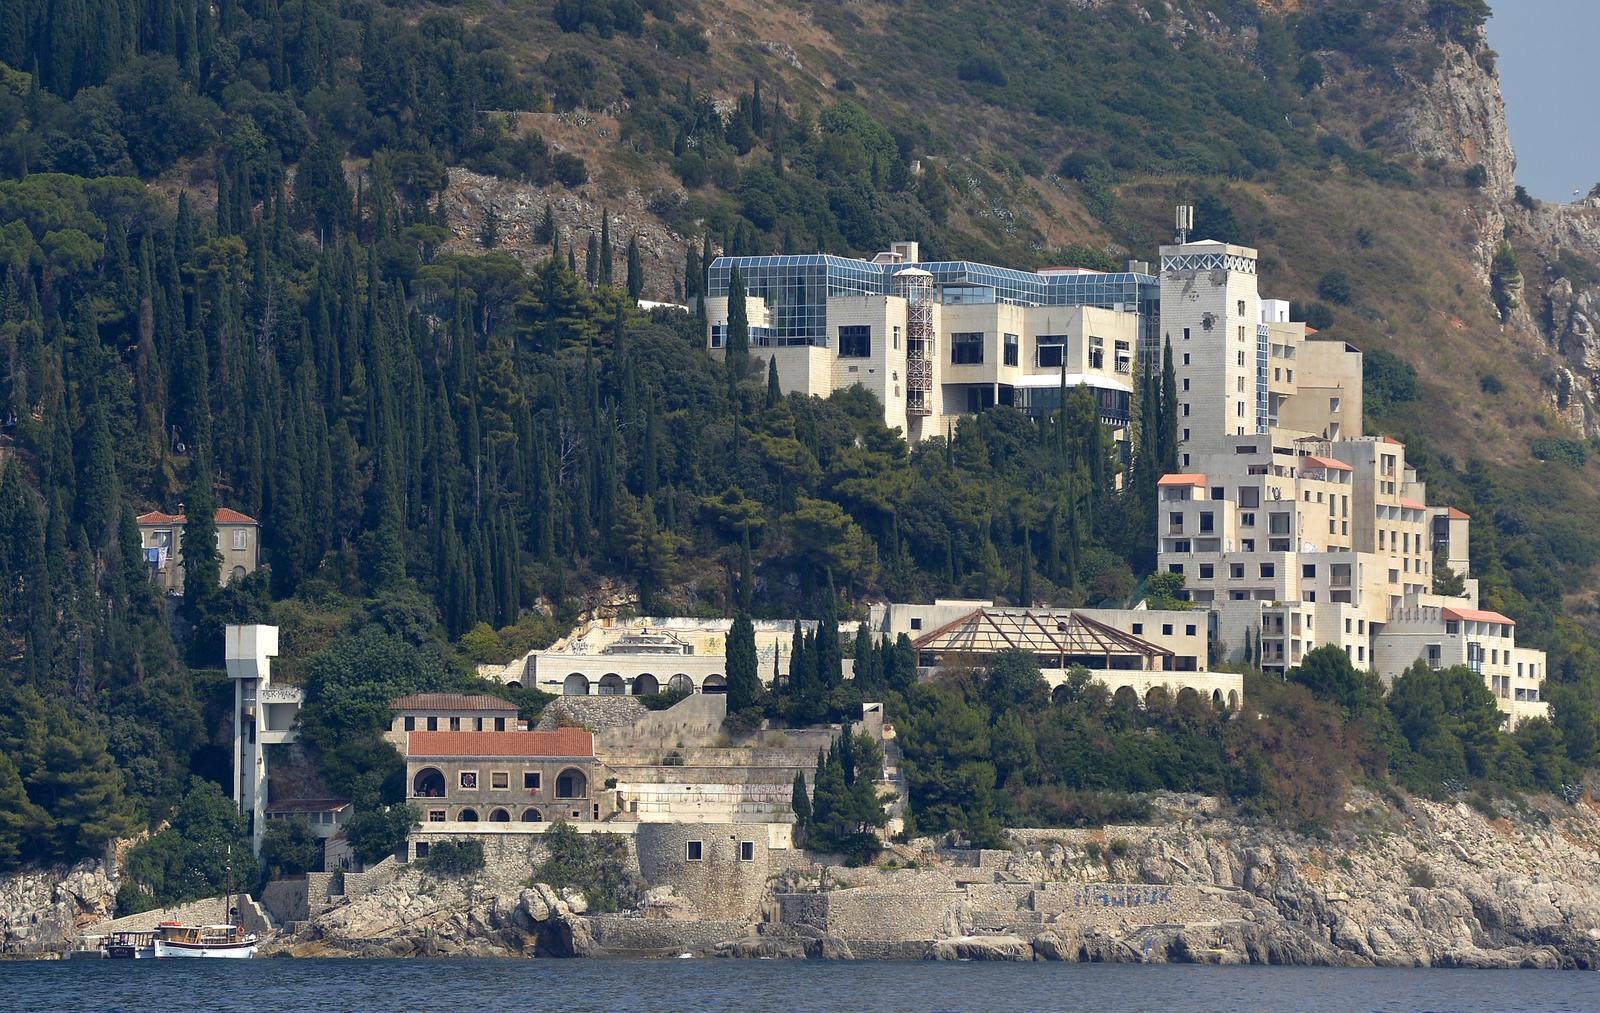 14.08.2015., Dubrovnik - Hotel Belvedere nekad jedan od najluksuznijih hrvatskih hotela potpuno je devastiran tijekom Domovinskog rata te je danas jedini neobnovljeni dubrovacki hotel. Nalazi se na kraju grada, a iz hotela se pruza pogled na staru gradsku jezgru, otok Lokrum i Cavtat. Na prvoj odrzanoj drzbi nije bilo zainteresiranih za kupnju kompleksa te je hotel prodan na drugoj drazbi tvrtki Vila Larus za 12,2 milijuna eura jedinom zainteresiranom kupcu. Iza tvrtke Vila Larus stoji ruski milijarder Viktor Vekselberg. 
Photo: Marko Lukunic/PIXSELL